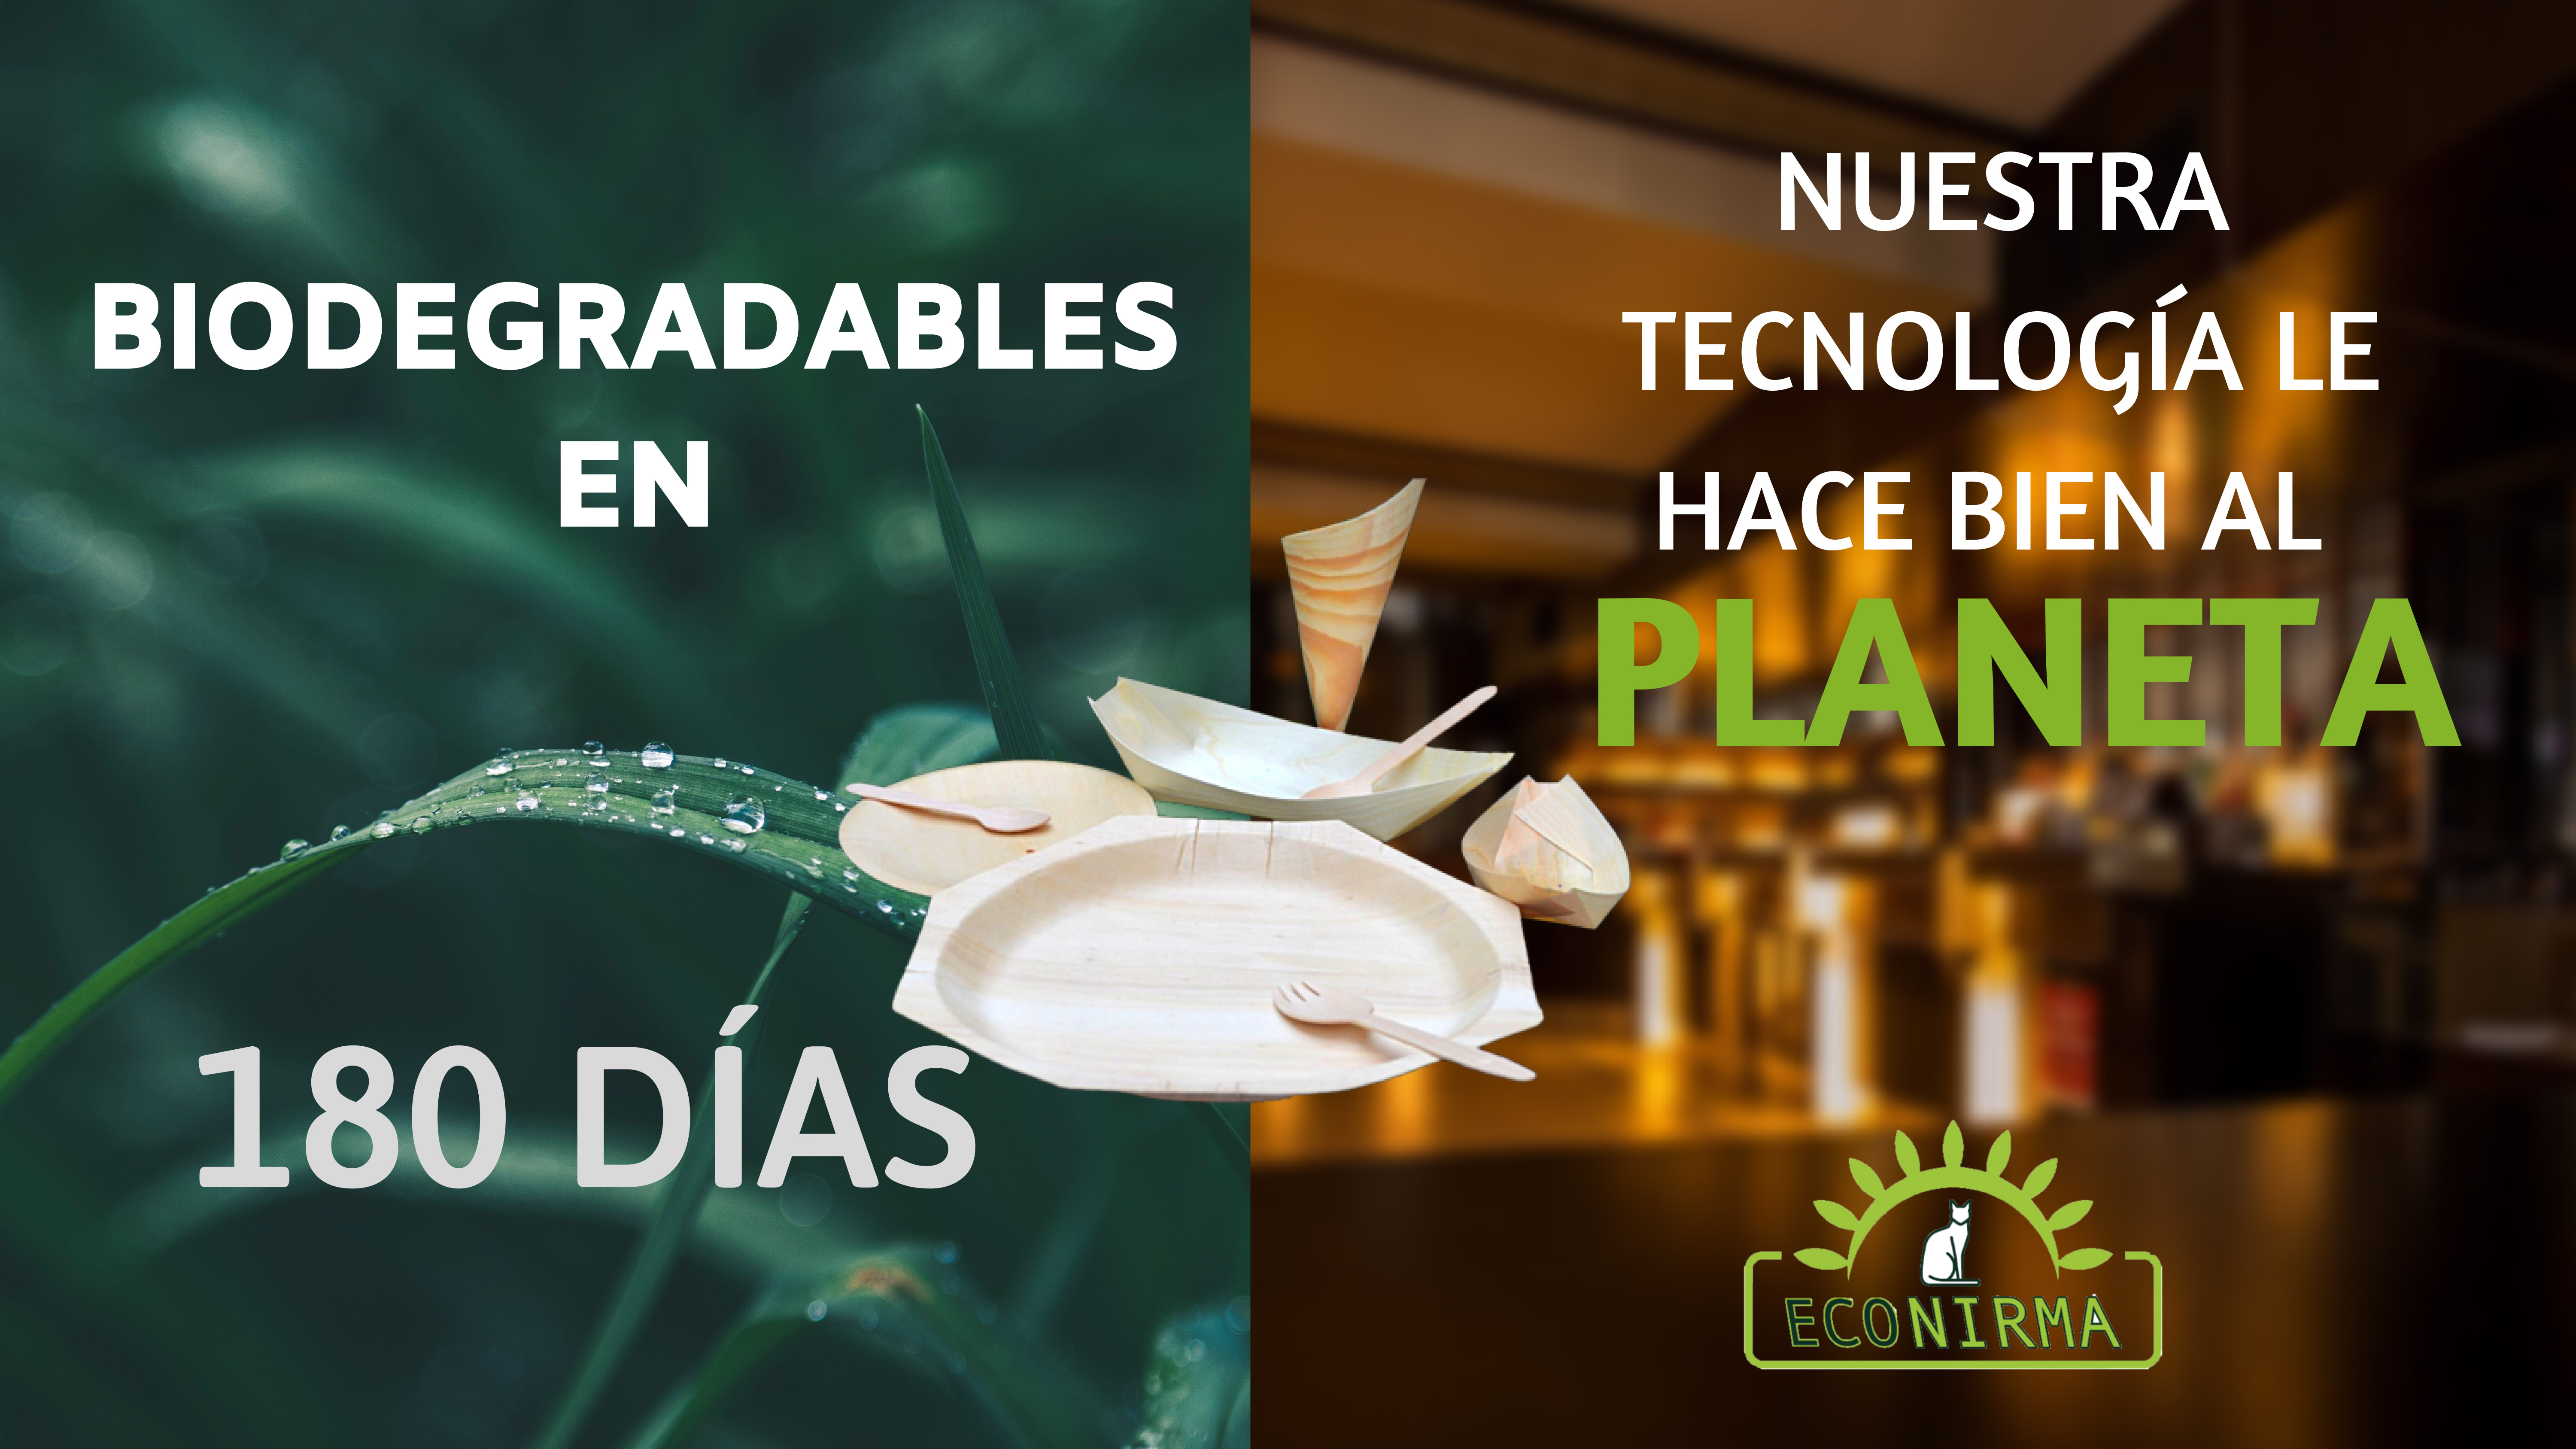 Platos Desechables en Colombia Ecologicos